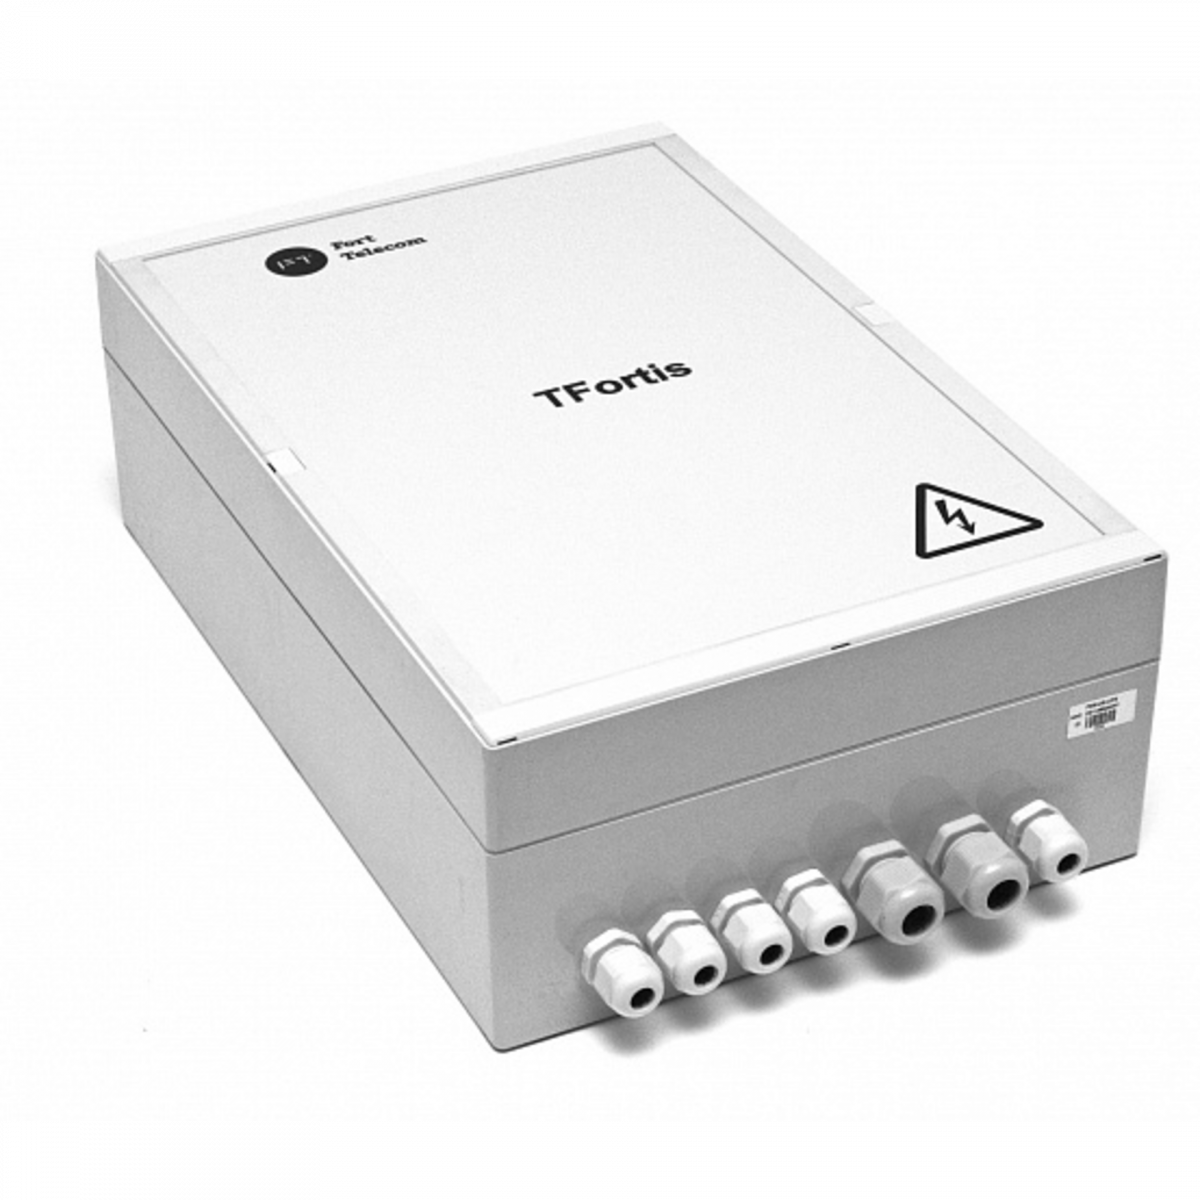 Уличный управляемый PoE коммутатор TFORTIS PSW-2G4F-UPS 4FE PoE +2 GB SFP порта, питание 220В, IP66 c системой бесперебойного питания, 4 АКБ в кмпл